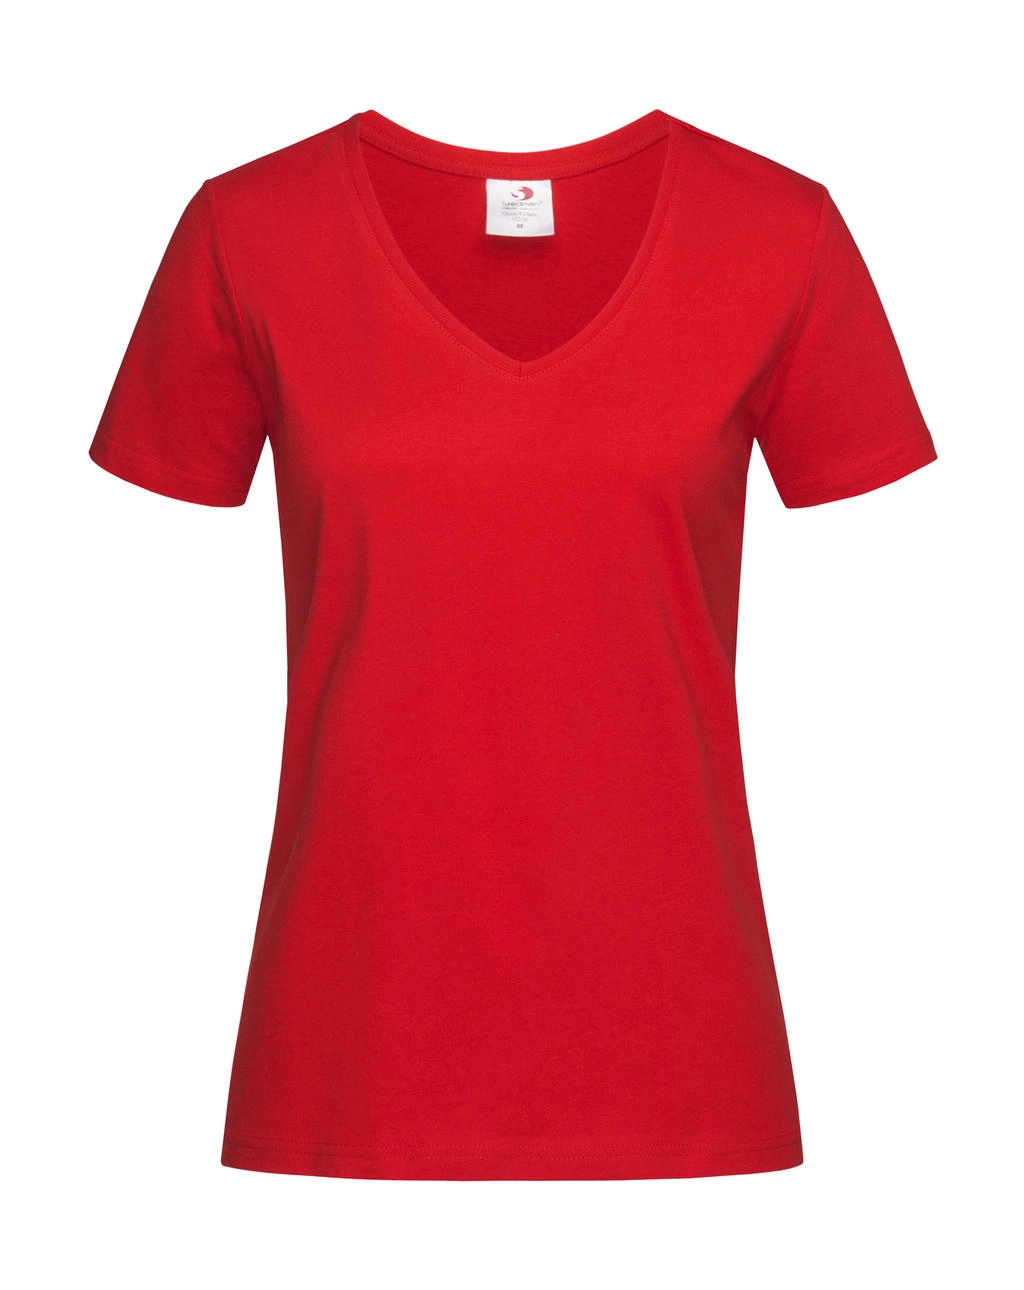 Classic-T V-Neck Women zum Besticken und Bedrucken in der Farbe Scarlet Red mit Ihren Logo, Schriftzug oder Motiv.